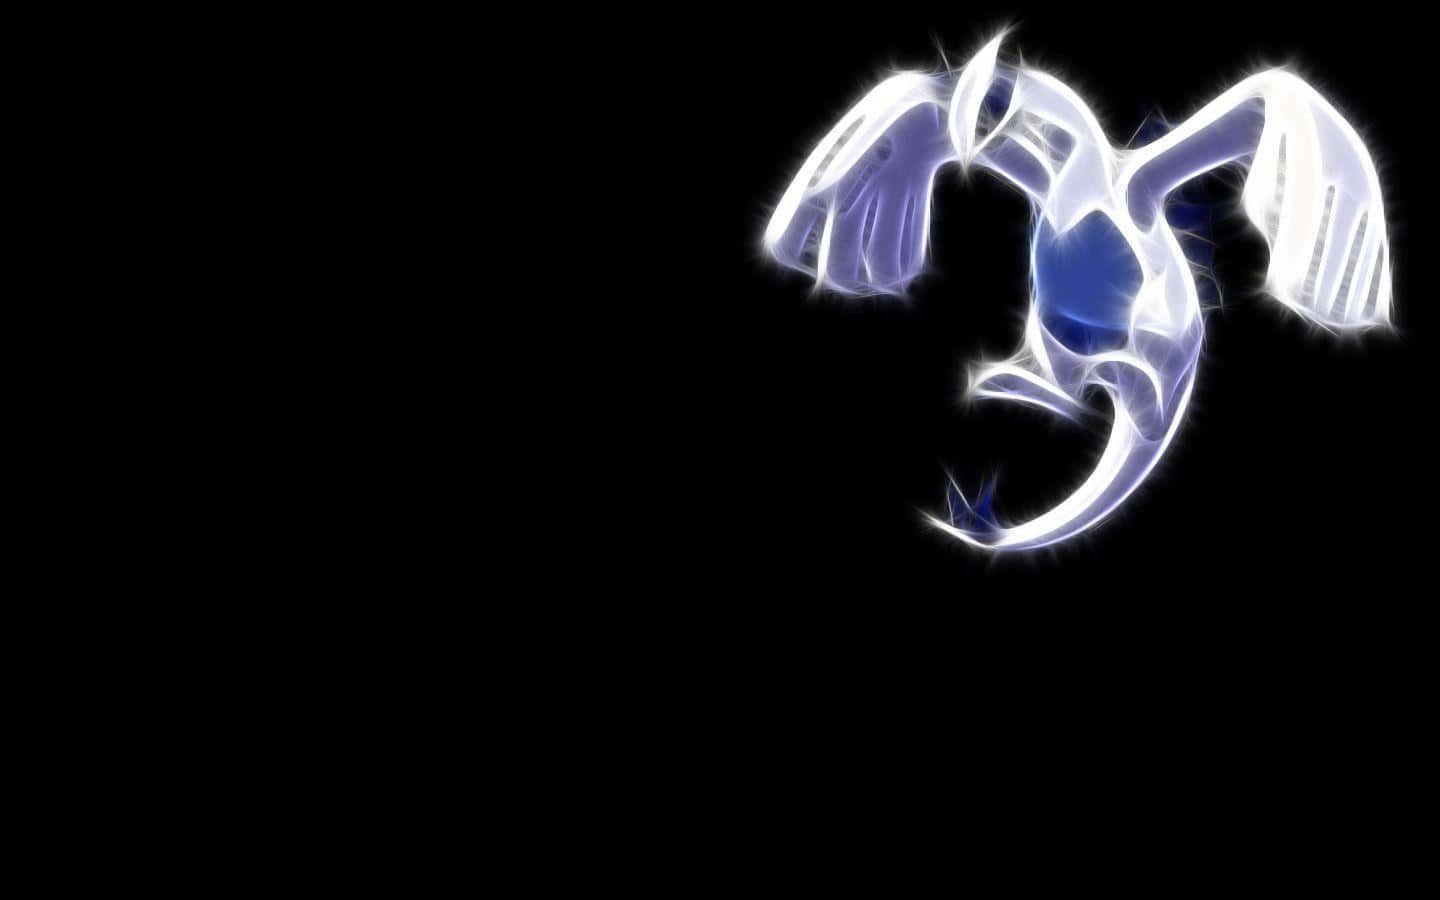 Einweißes Und Blaues Pokémon Auf Einem Schwarzen Hintergrund.